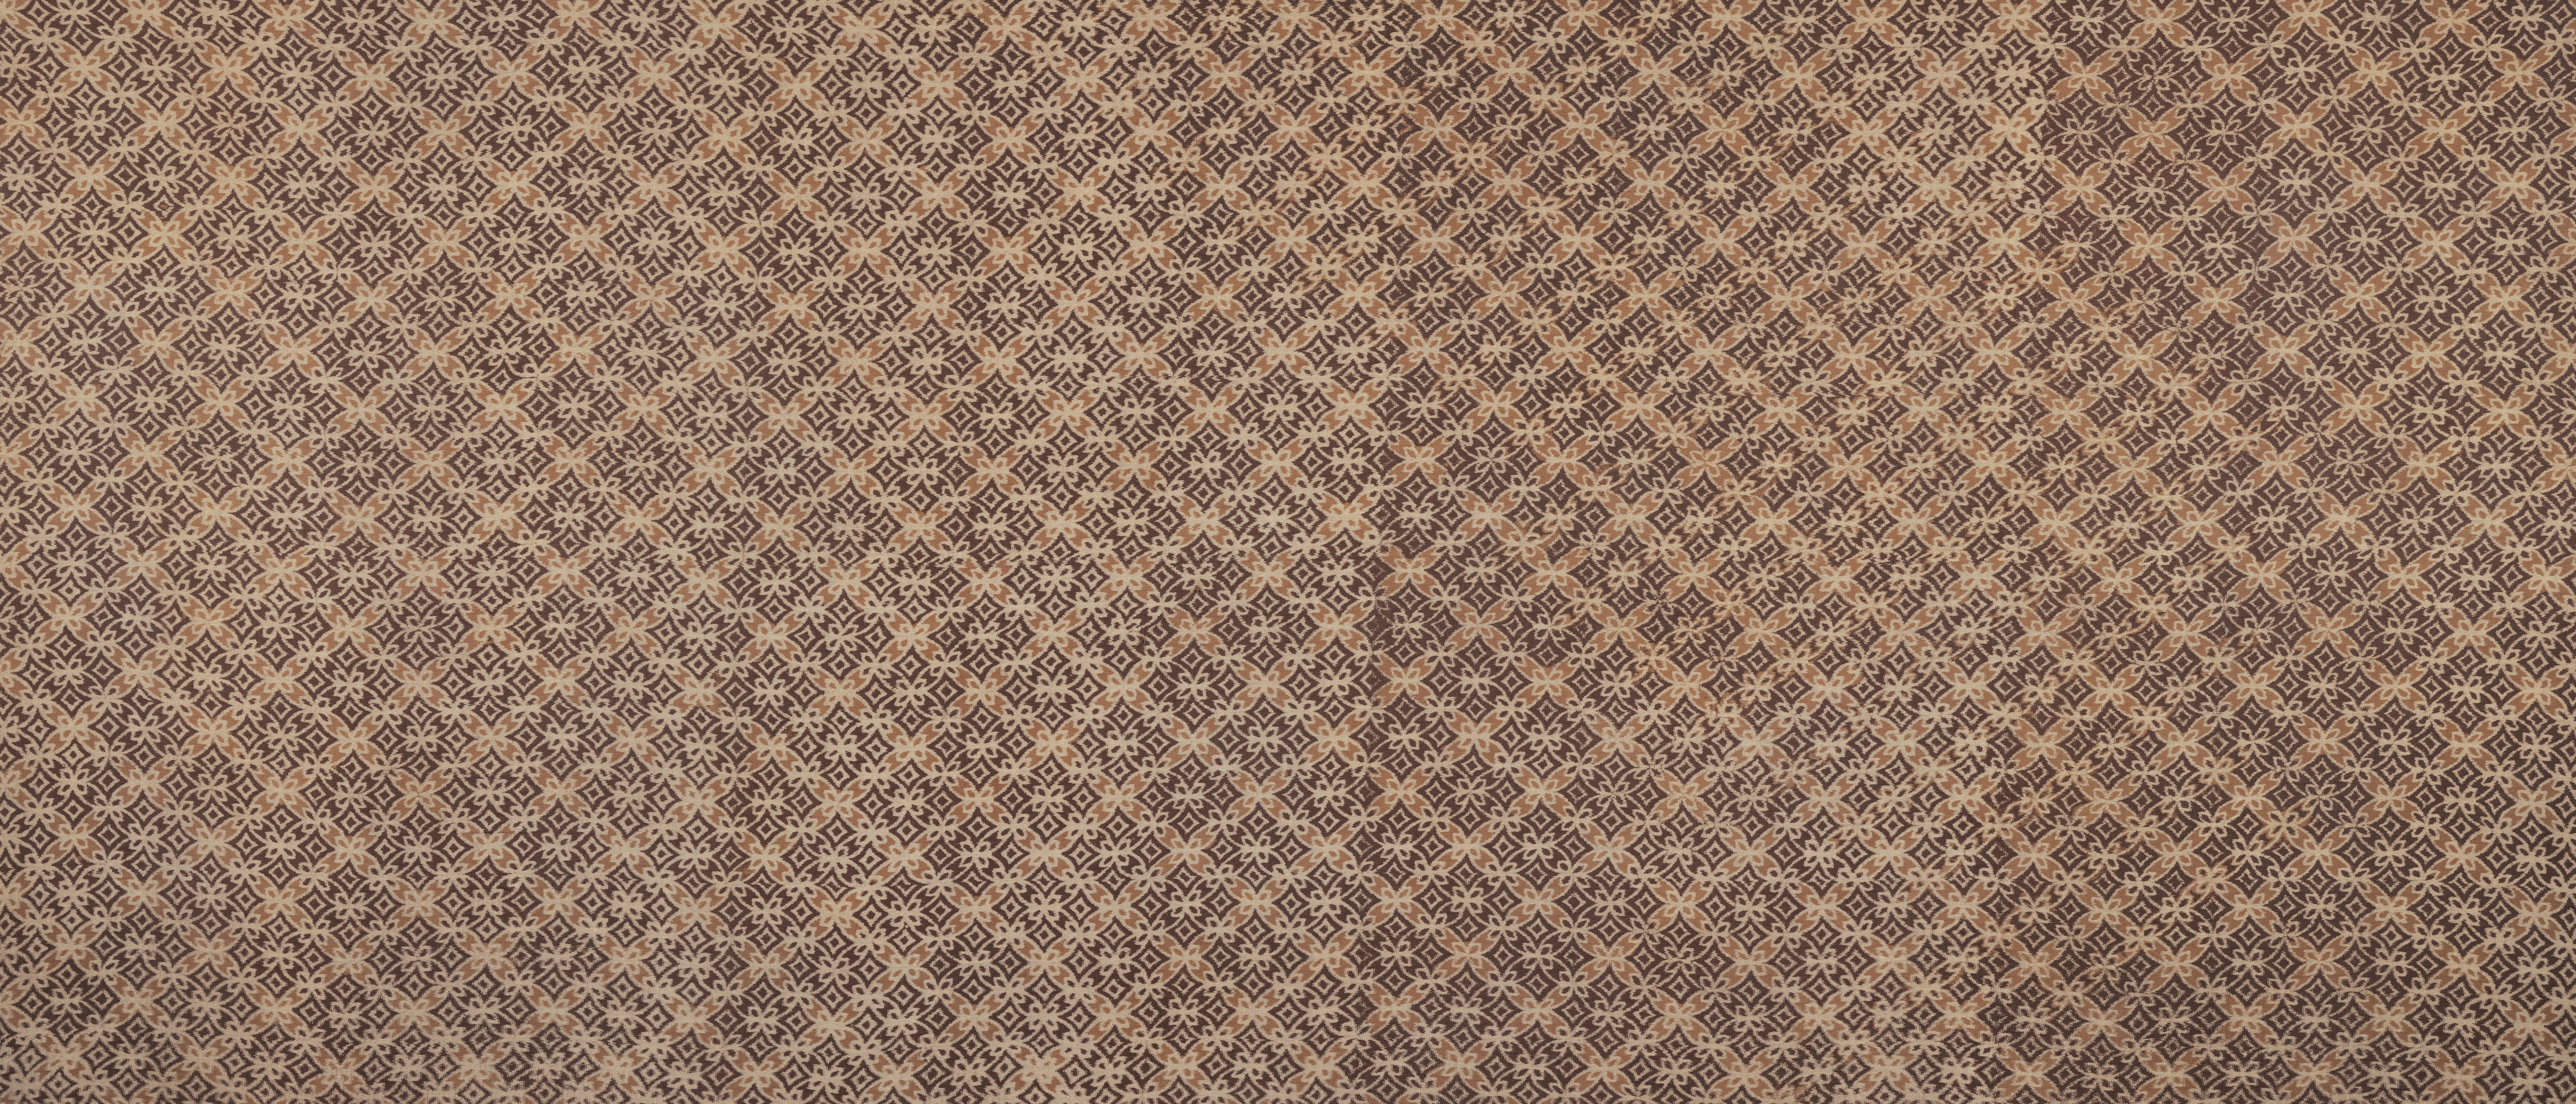 General 6410x2747 ultrawide fabric texture pattern digital art